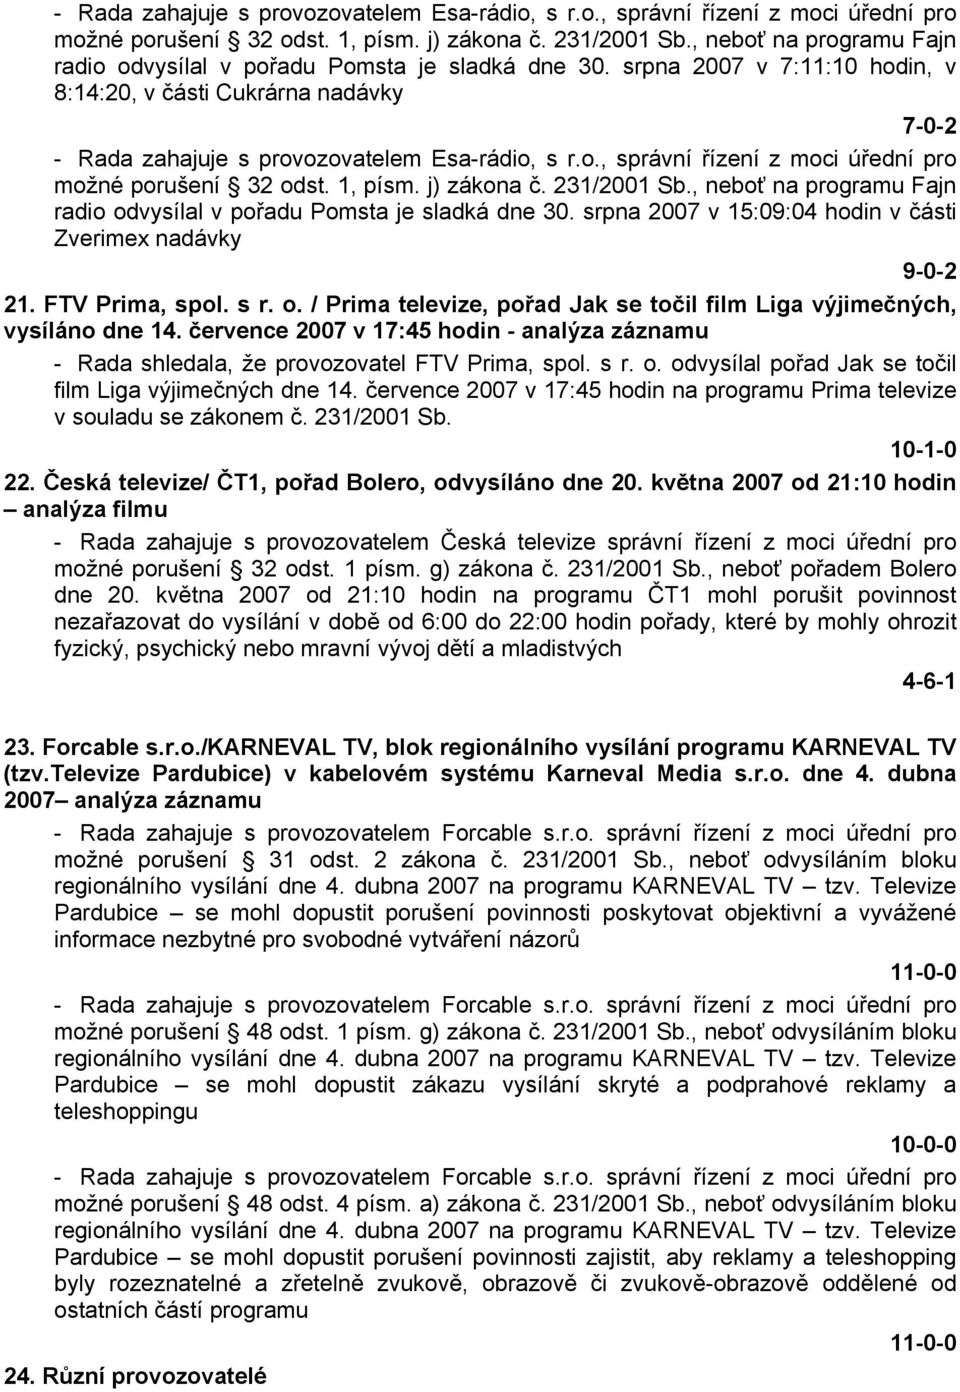 srpna 2007 v 7:11:10 hodin, v 8:14:20, v části Cukrárna nadávky 7-0-2  srpna 2007 v 15:09:04 hodin v části Zverimex nadávky 9-0-2 21. FTV Prima, spol. s r. o.